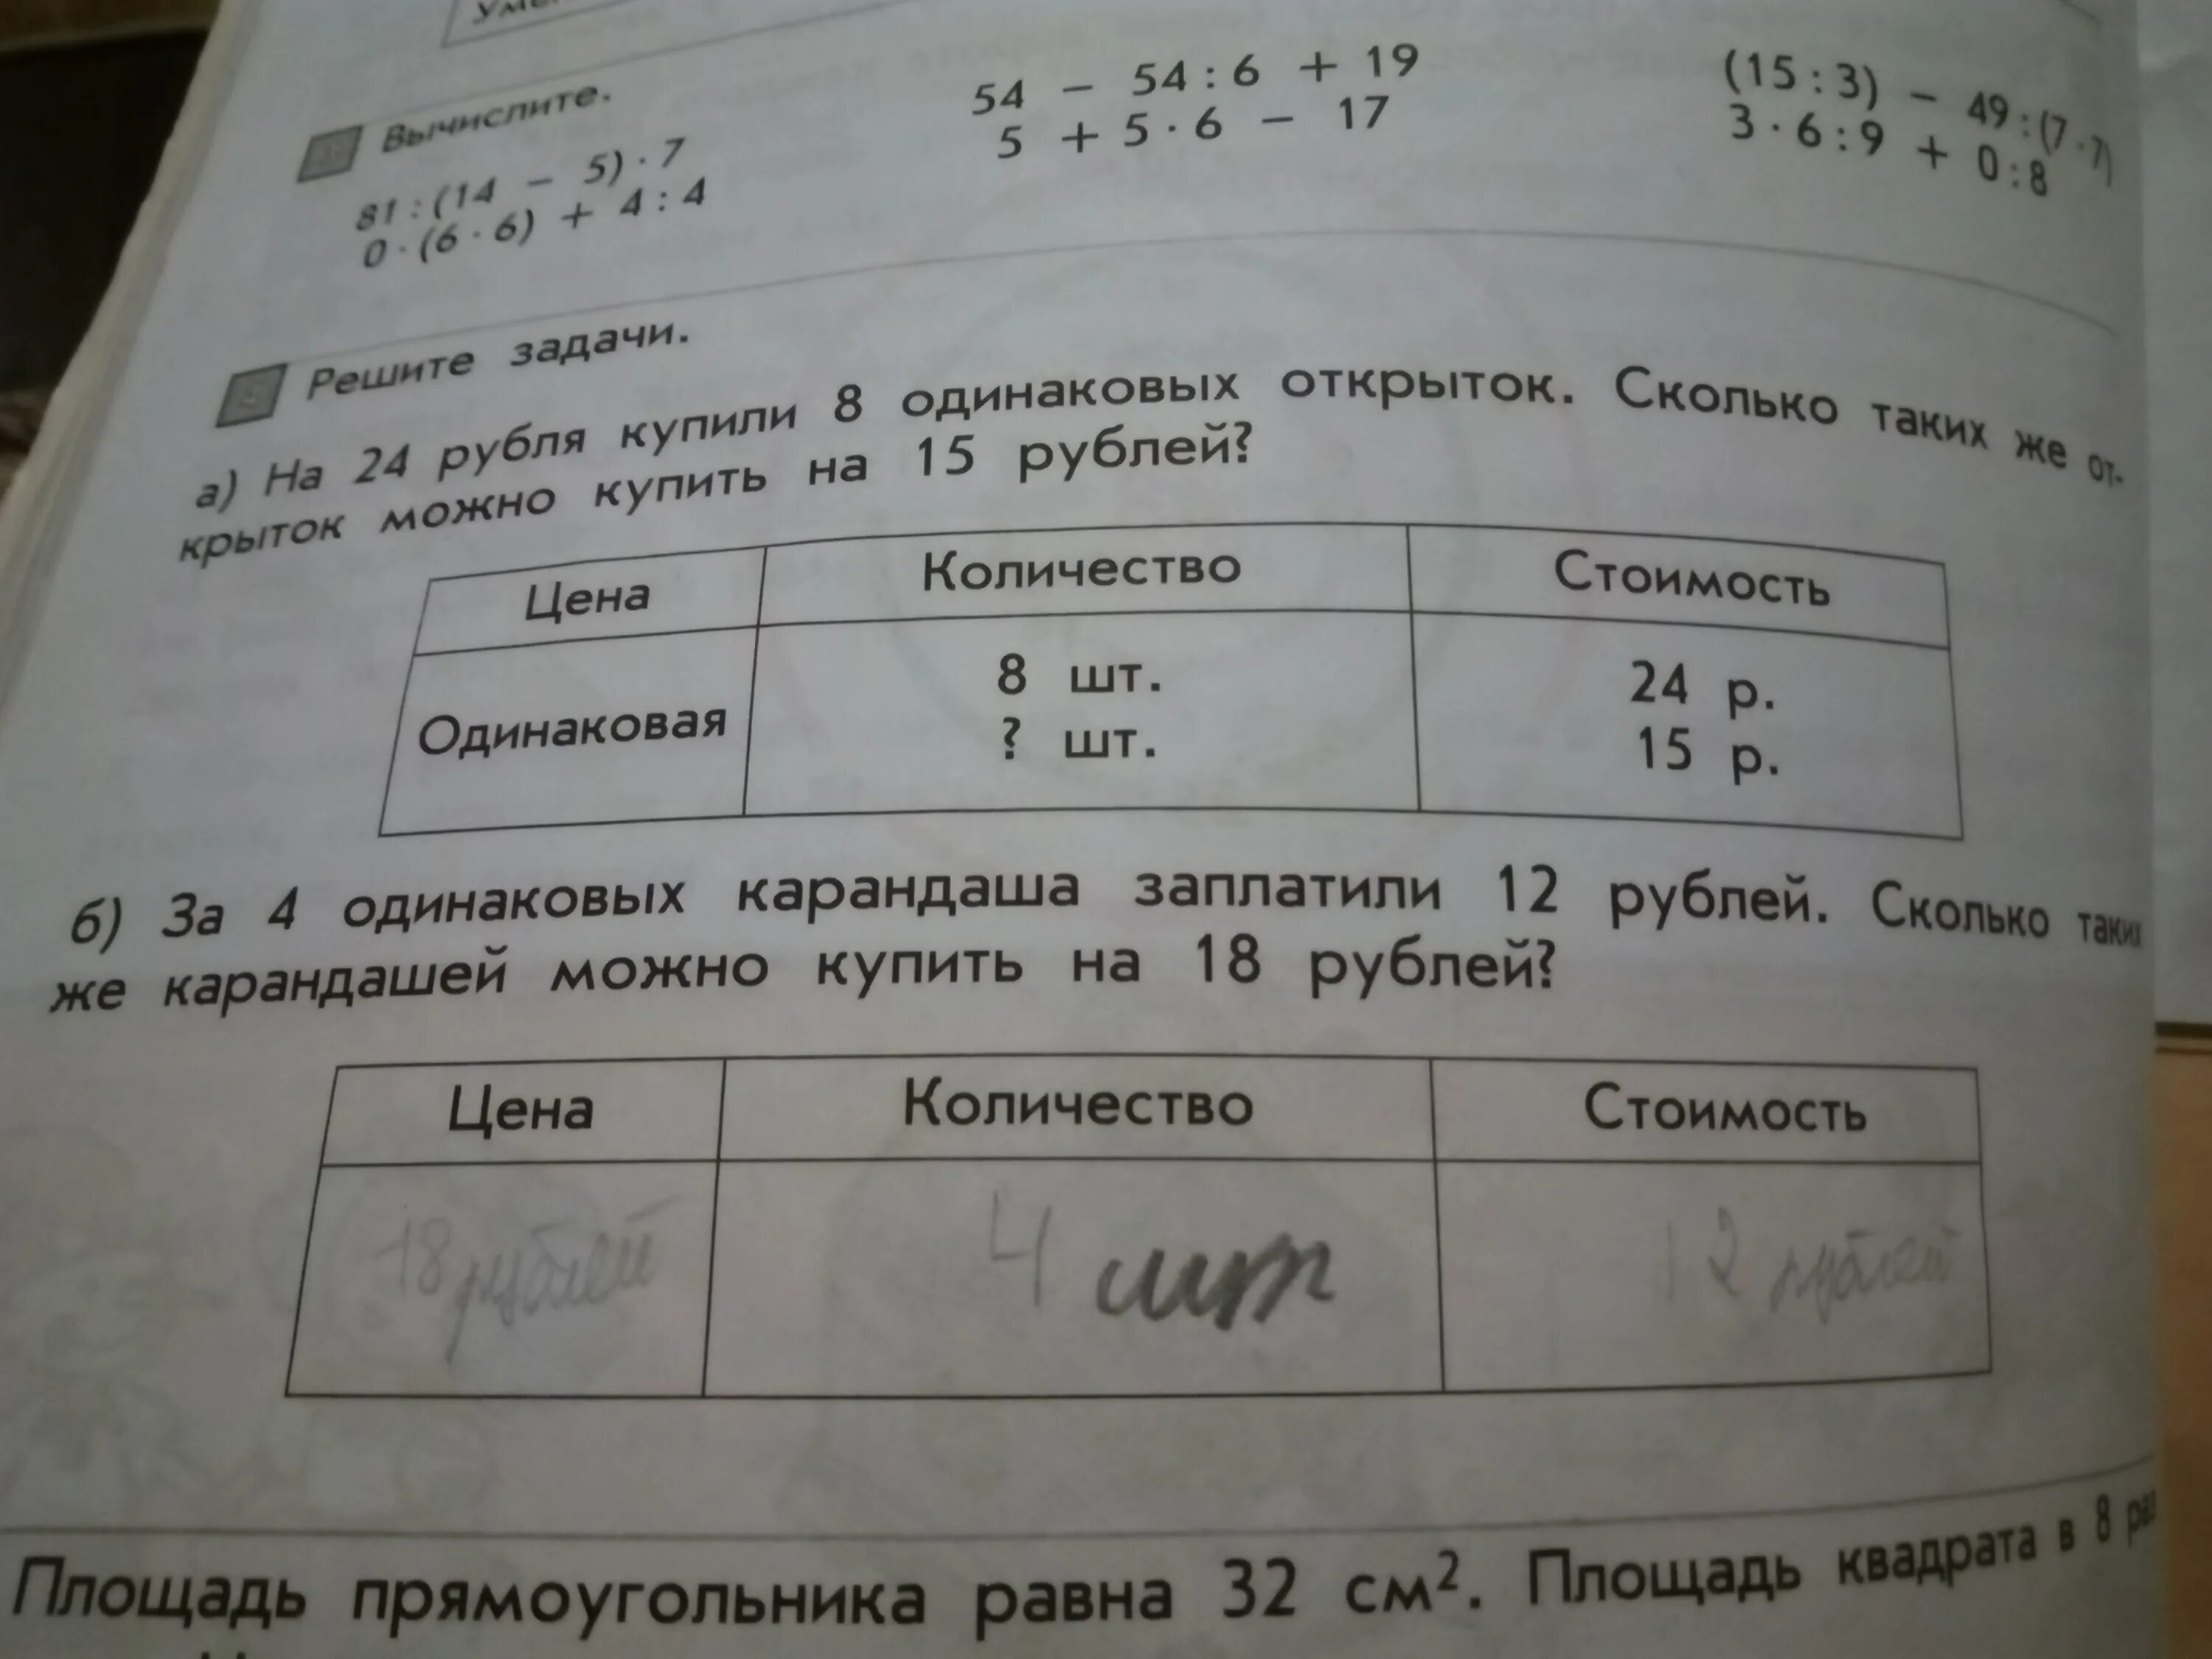 Цена карандаша 6 рублей сколько. Условия задачи 8 карандашей. Соедини условия задач с их вопросами.. Решение задачи 8 карандашей стоят 24 рубля. Задача про рубль.